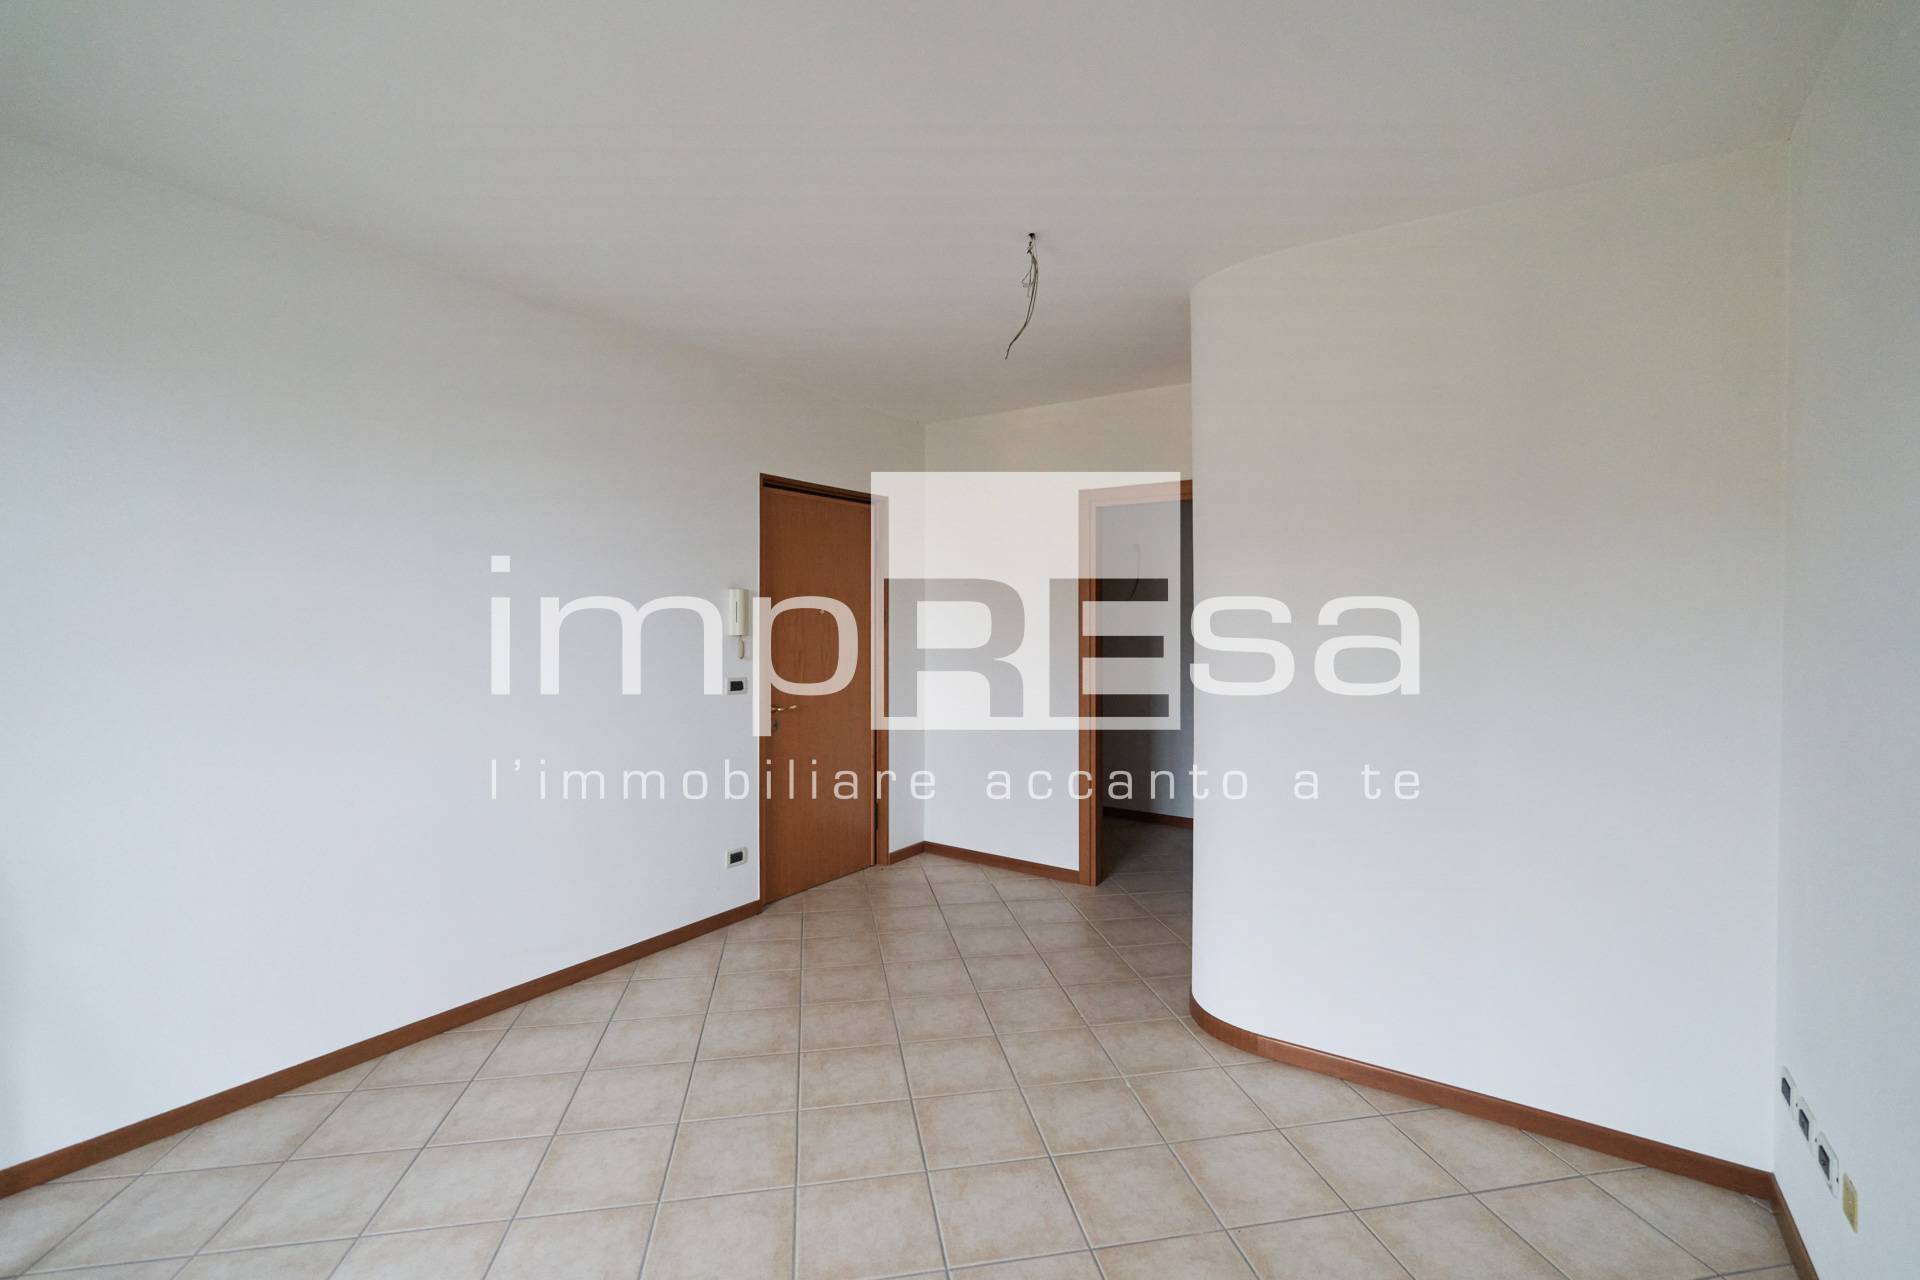 Appartamento in vendita a Pramaggiore, 4 locali, prezzo € 148.000 | PortaleAgenzieImmobiliari.it